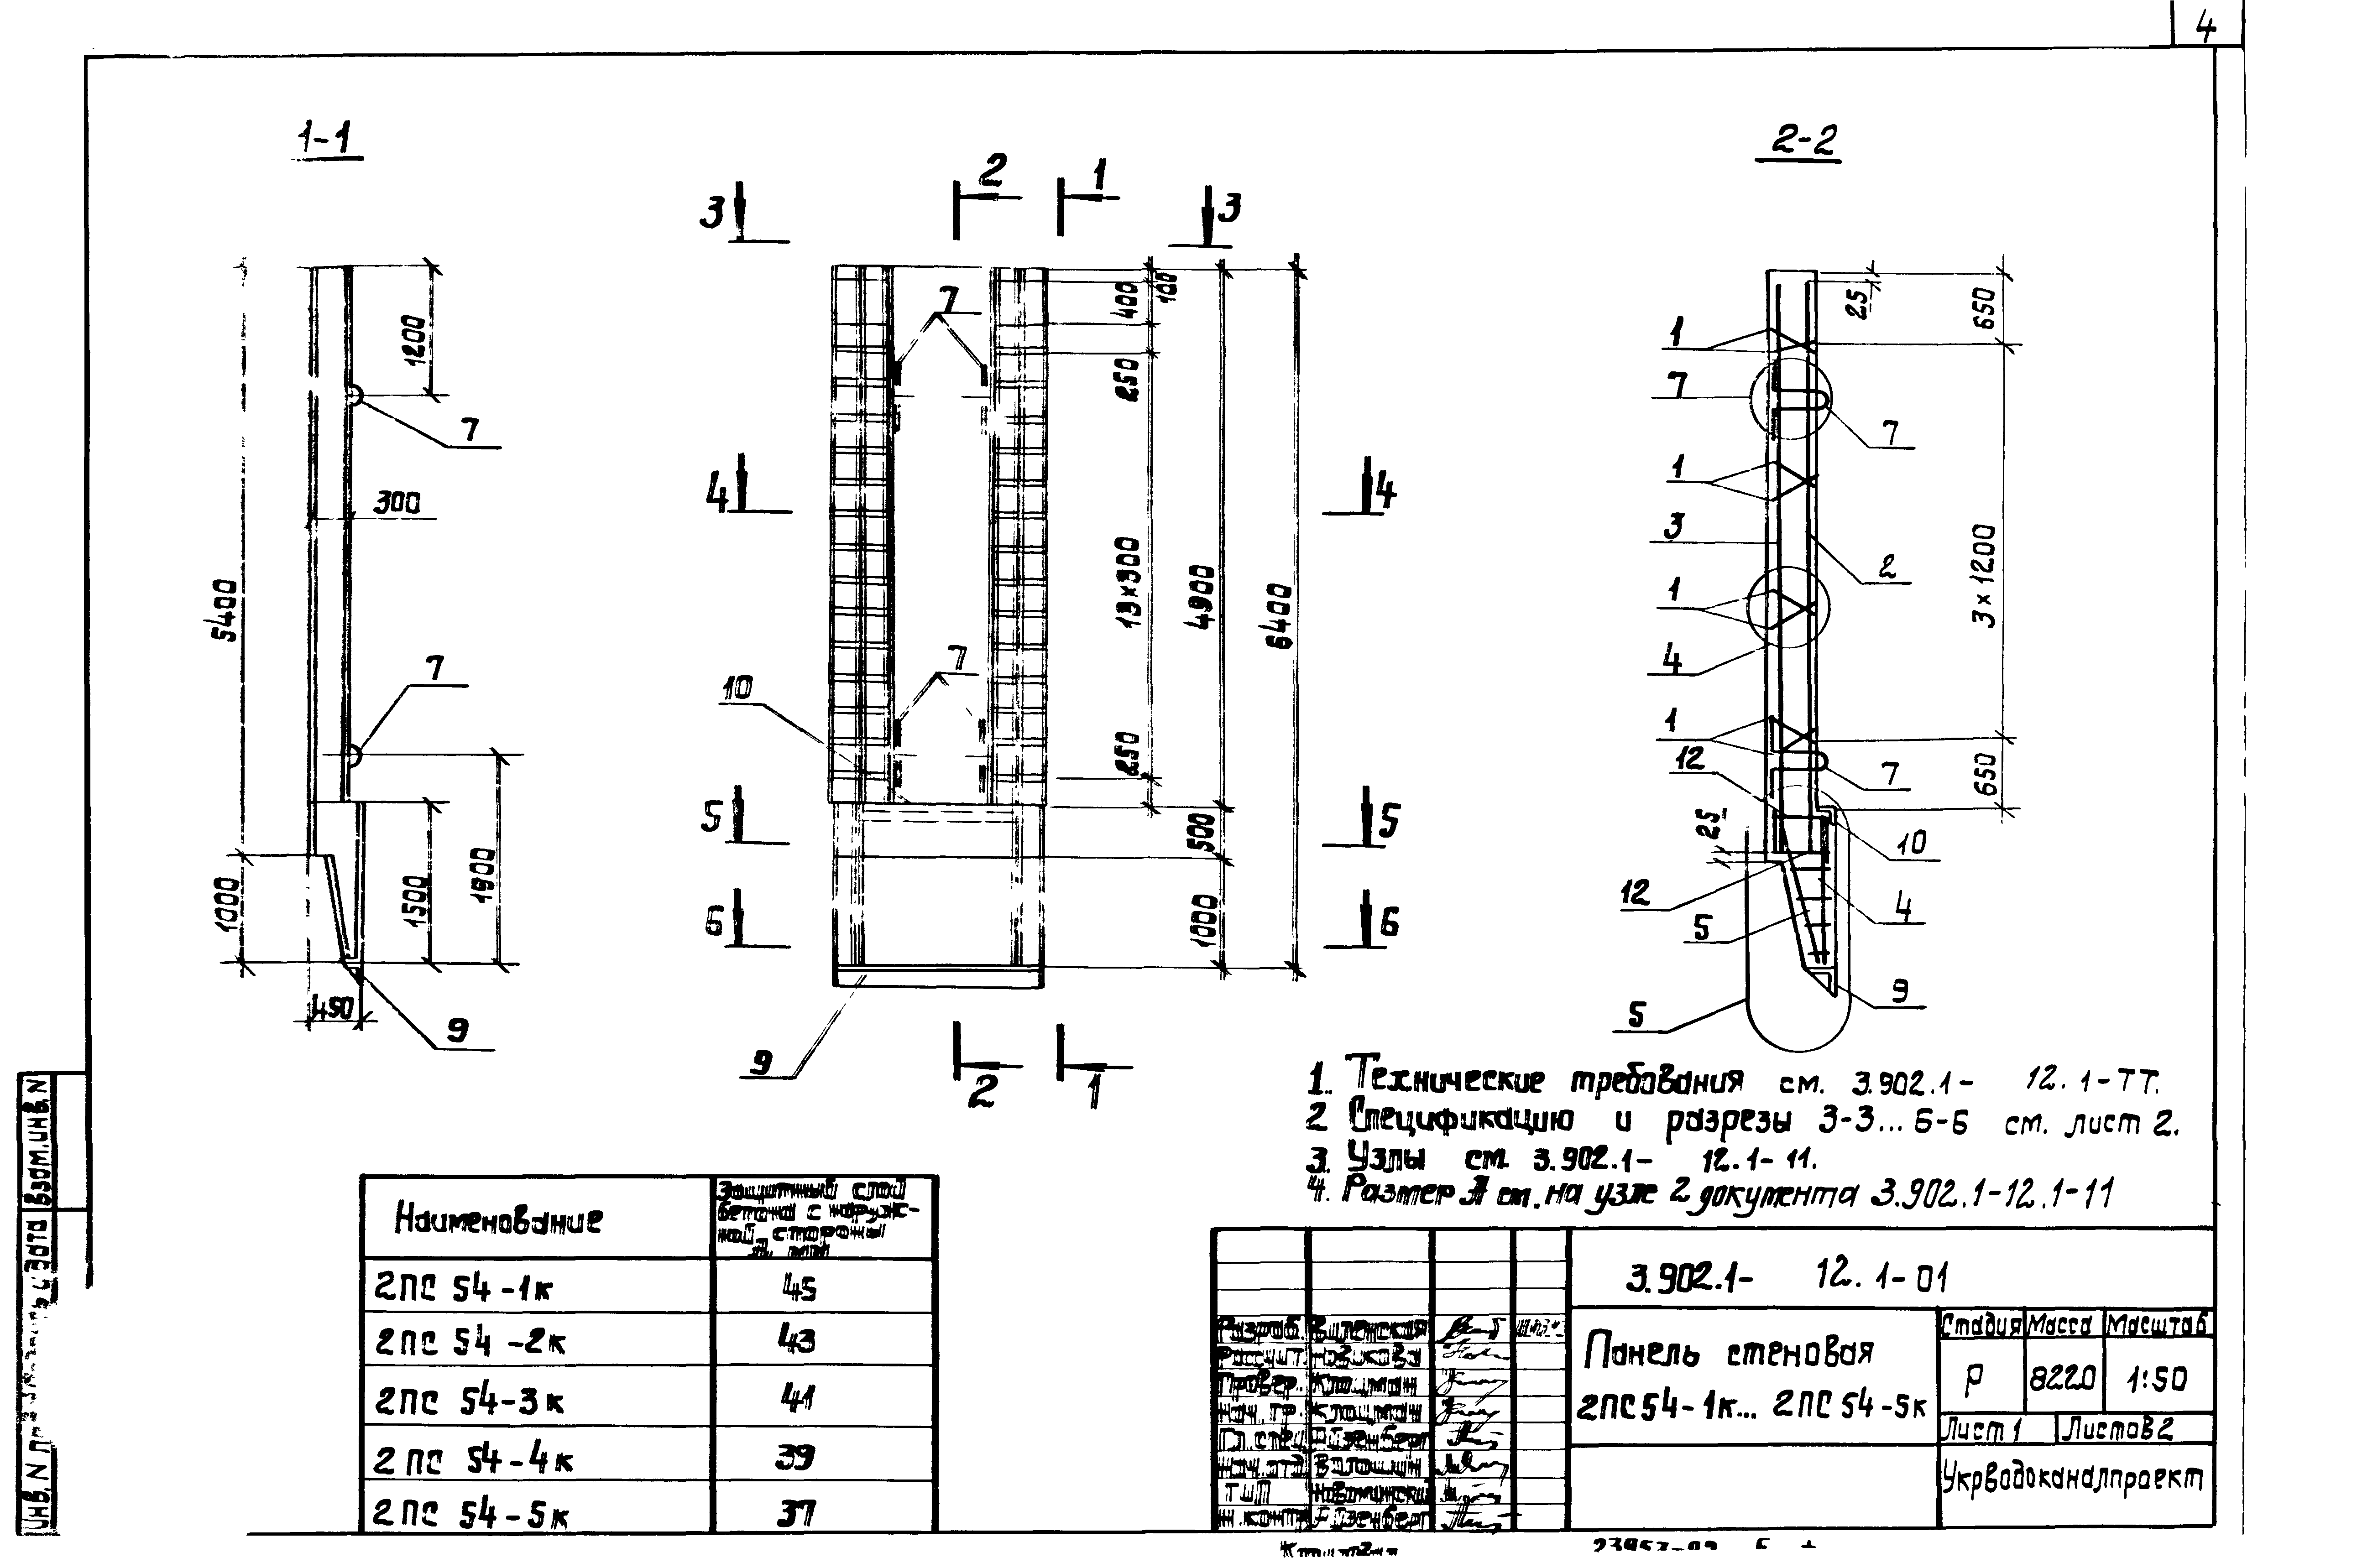 Панель стеновая 2ПС54-3к Серия 3.902.1-12, вып.1